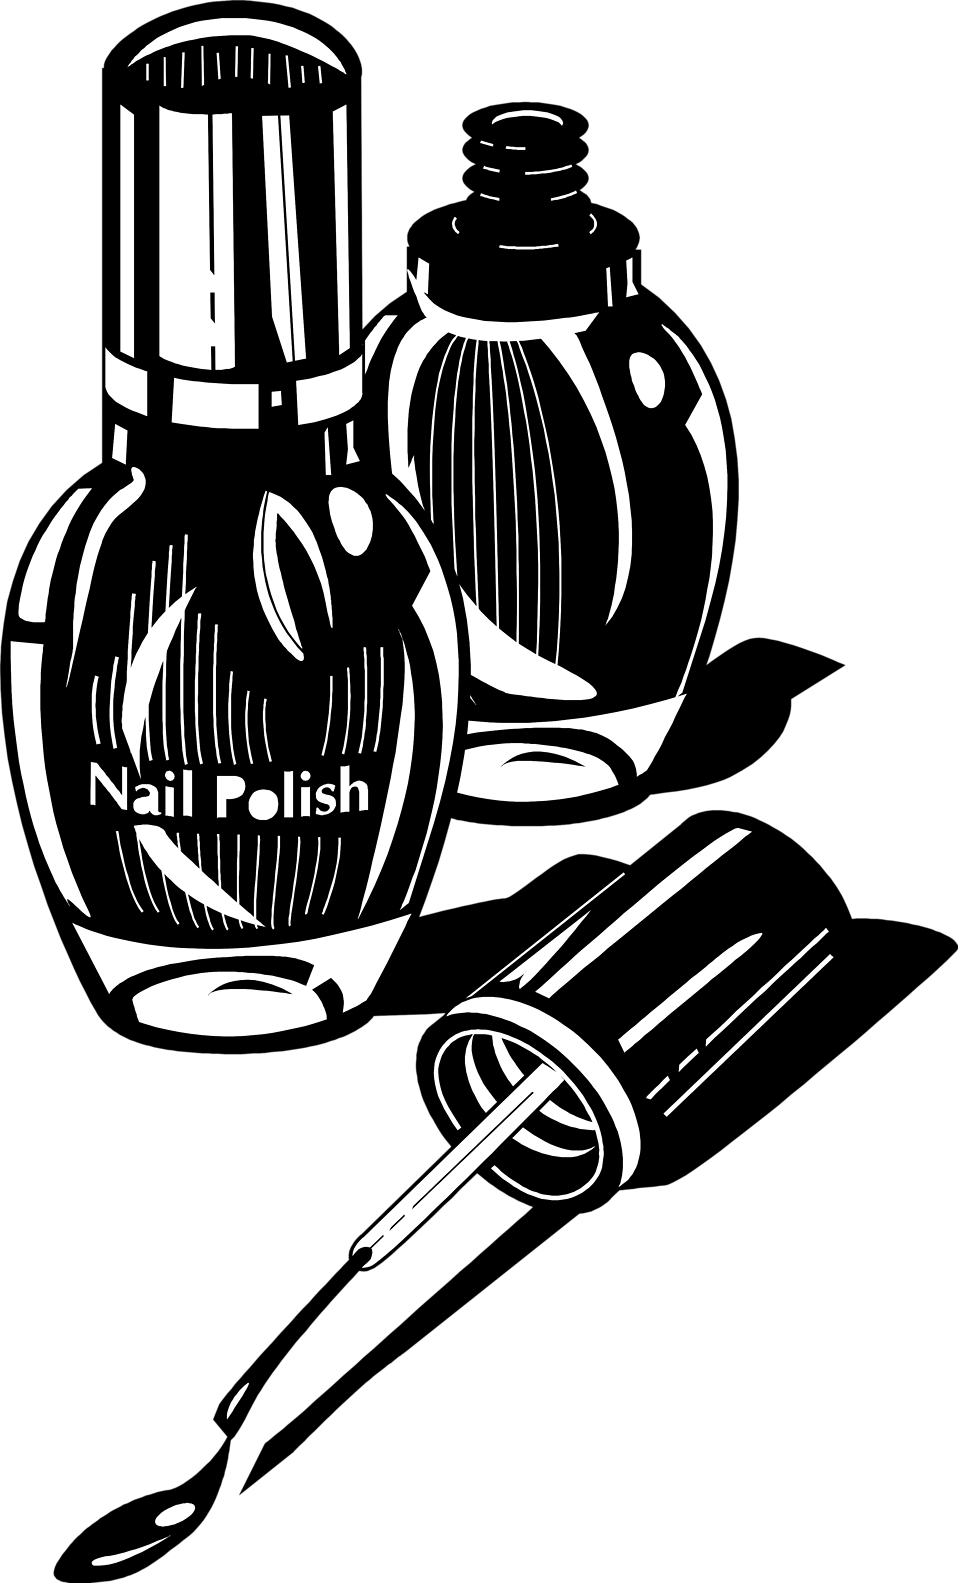 Nail Polish | Free Stock Photo | Illustration of nail polish 